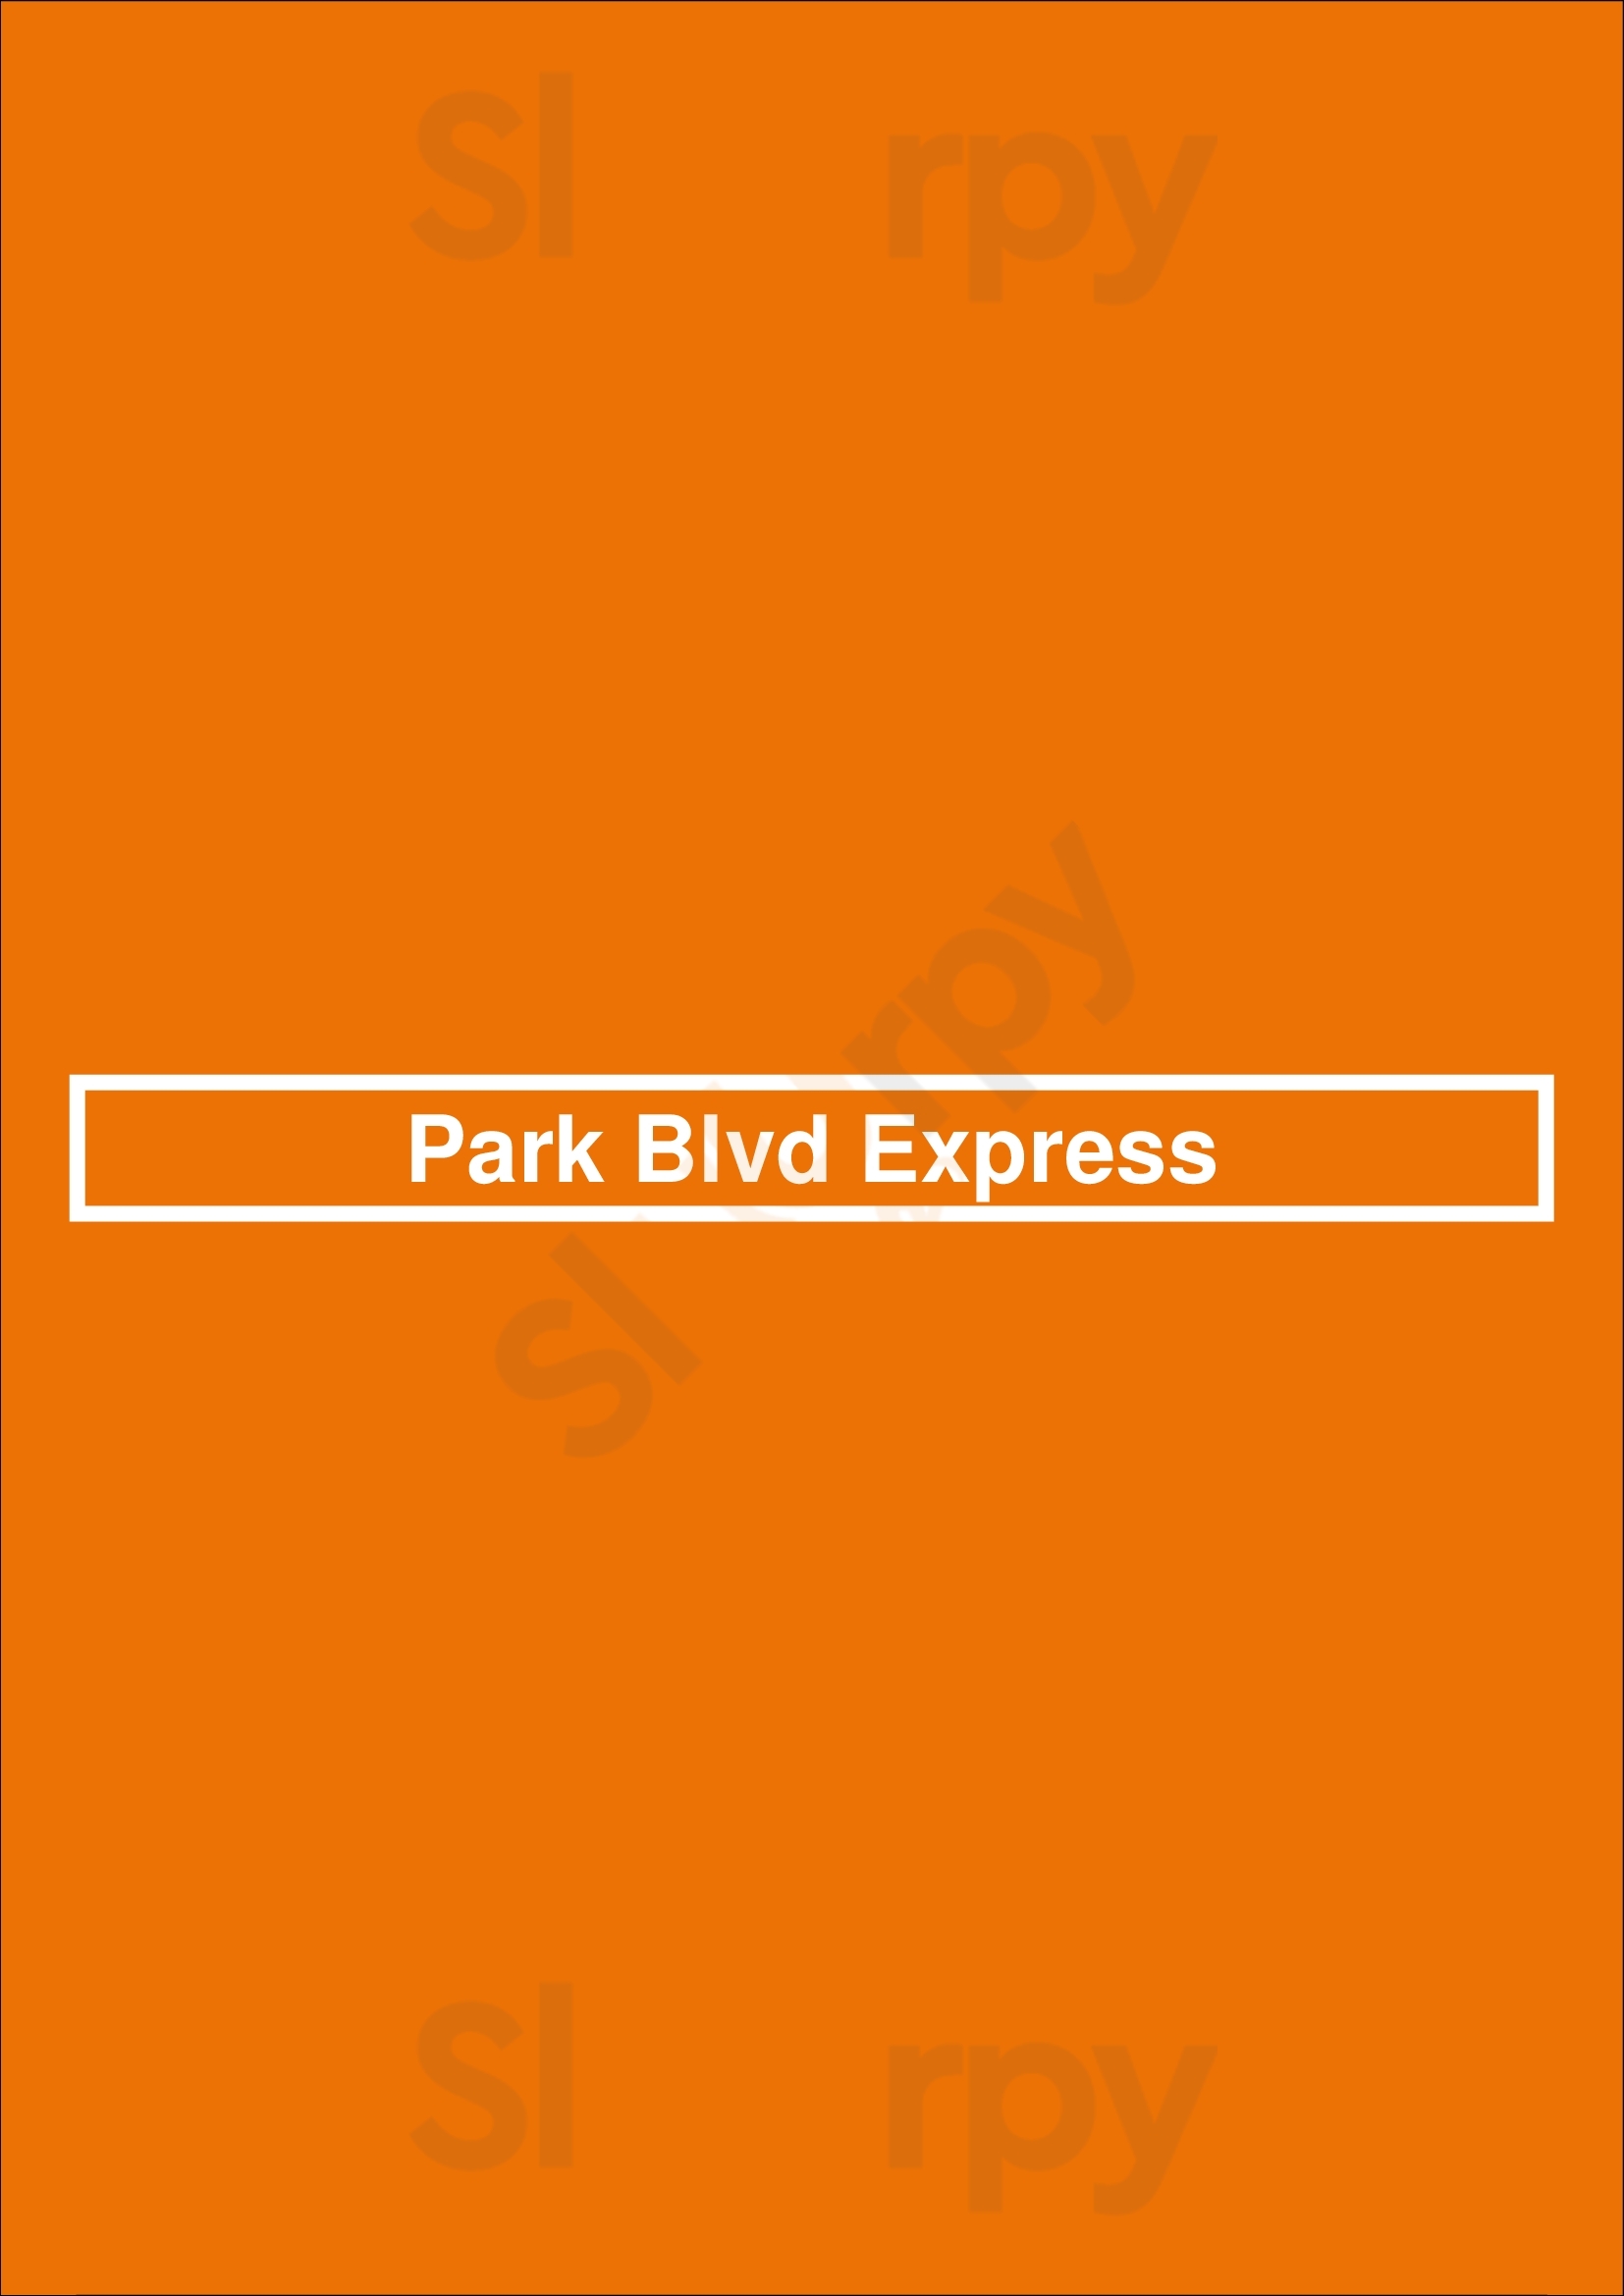 Park Blvd Express San Diego Menu - 1